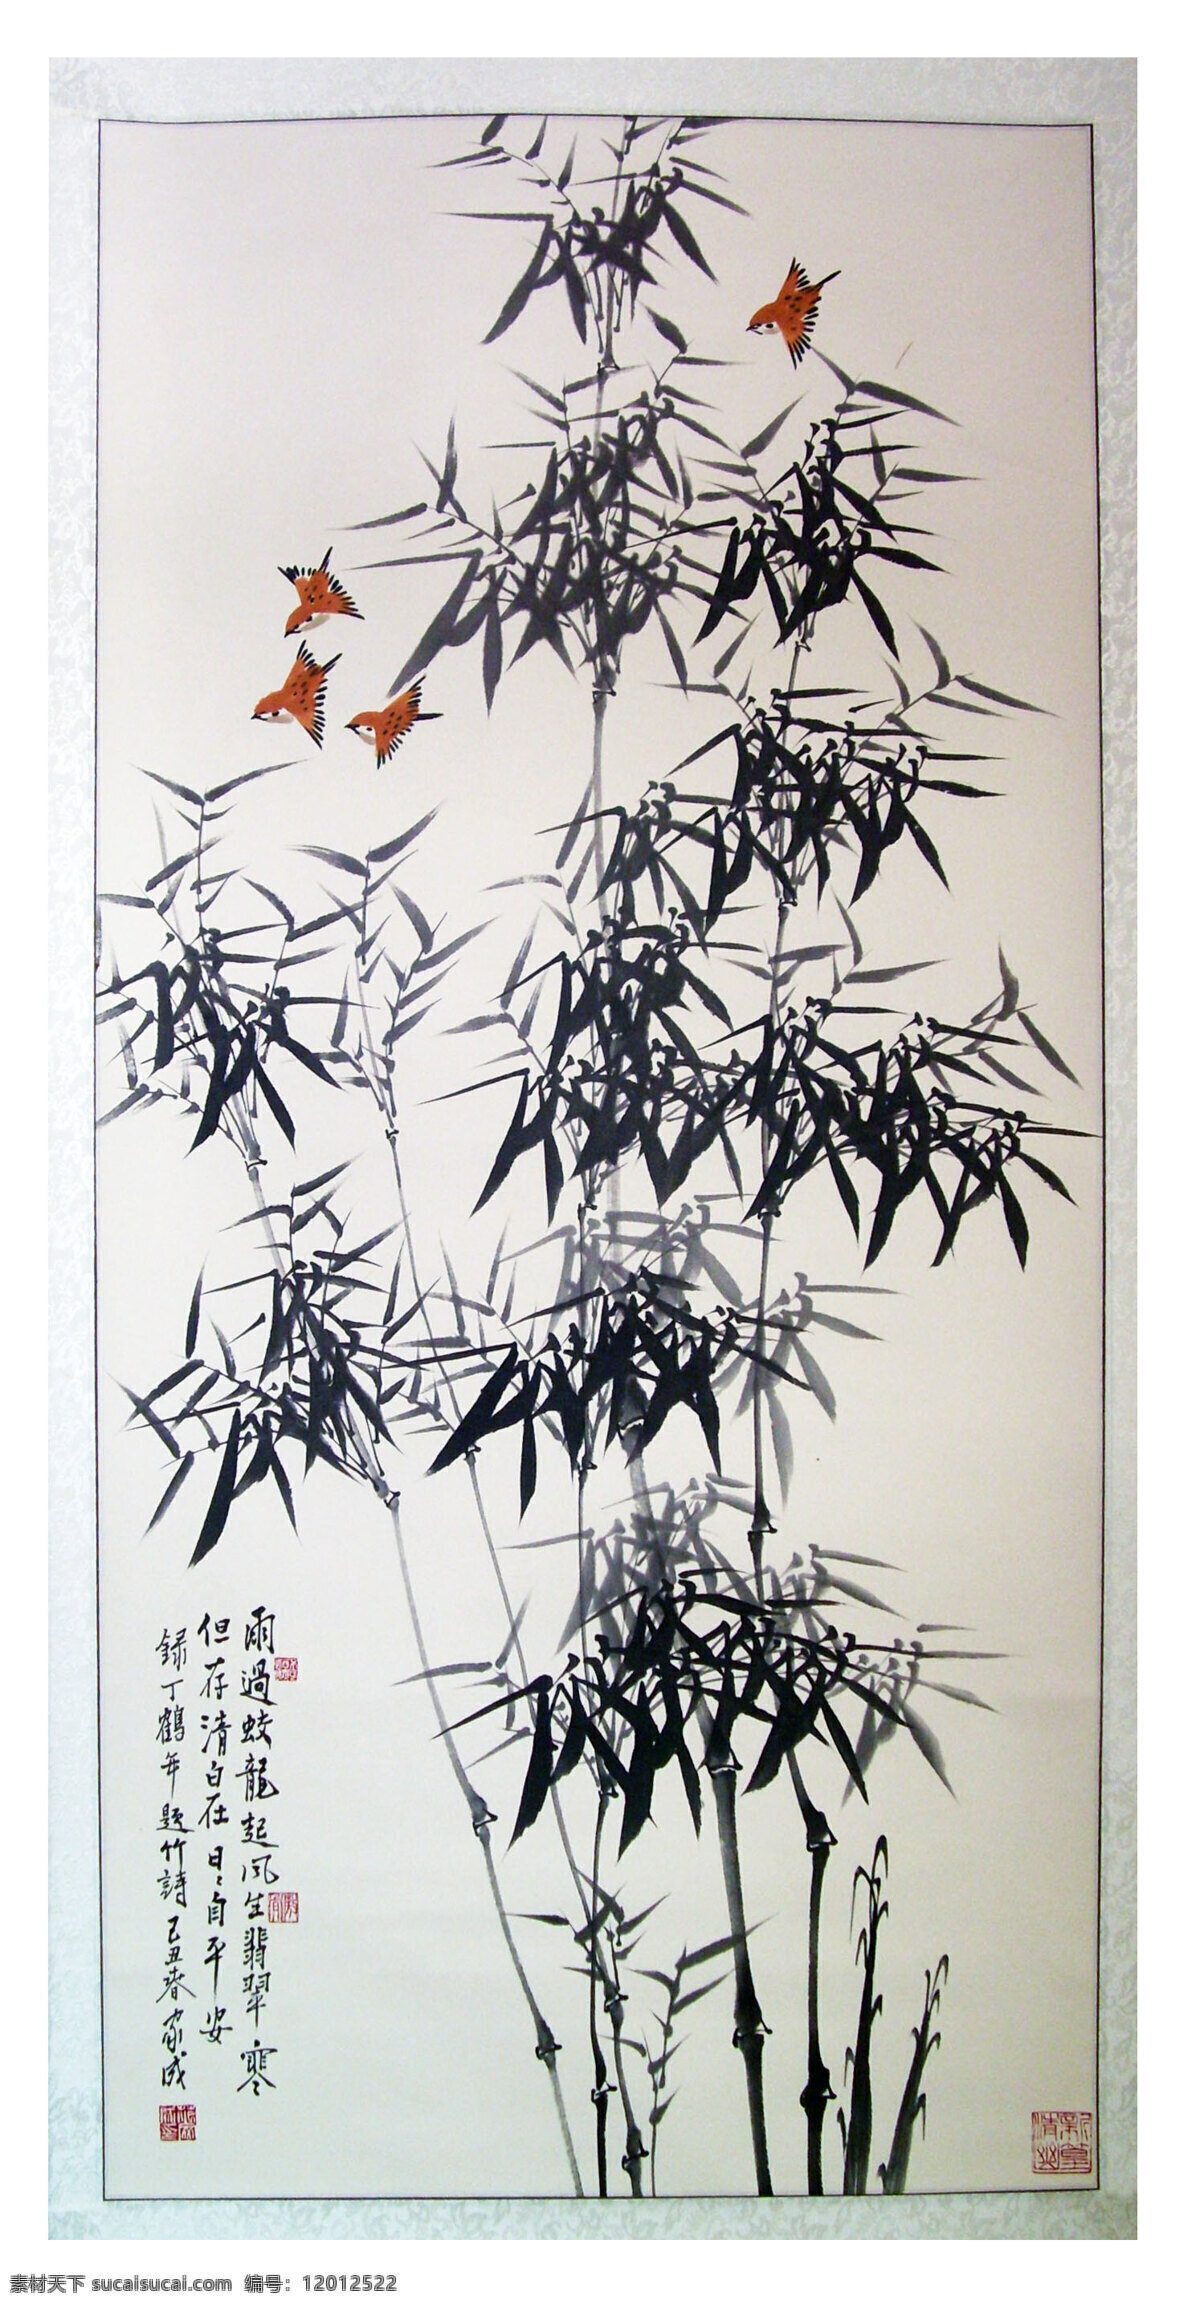 水墨竹 传统 文化 图画 工笔画 中国风 唯美 清新 意境 艺术 画 国画 水墨 水墨画 竹子 文化艺术 绘画书法